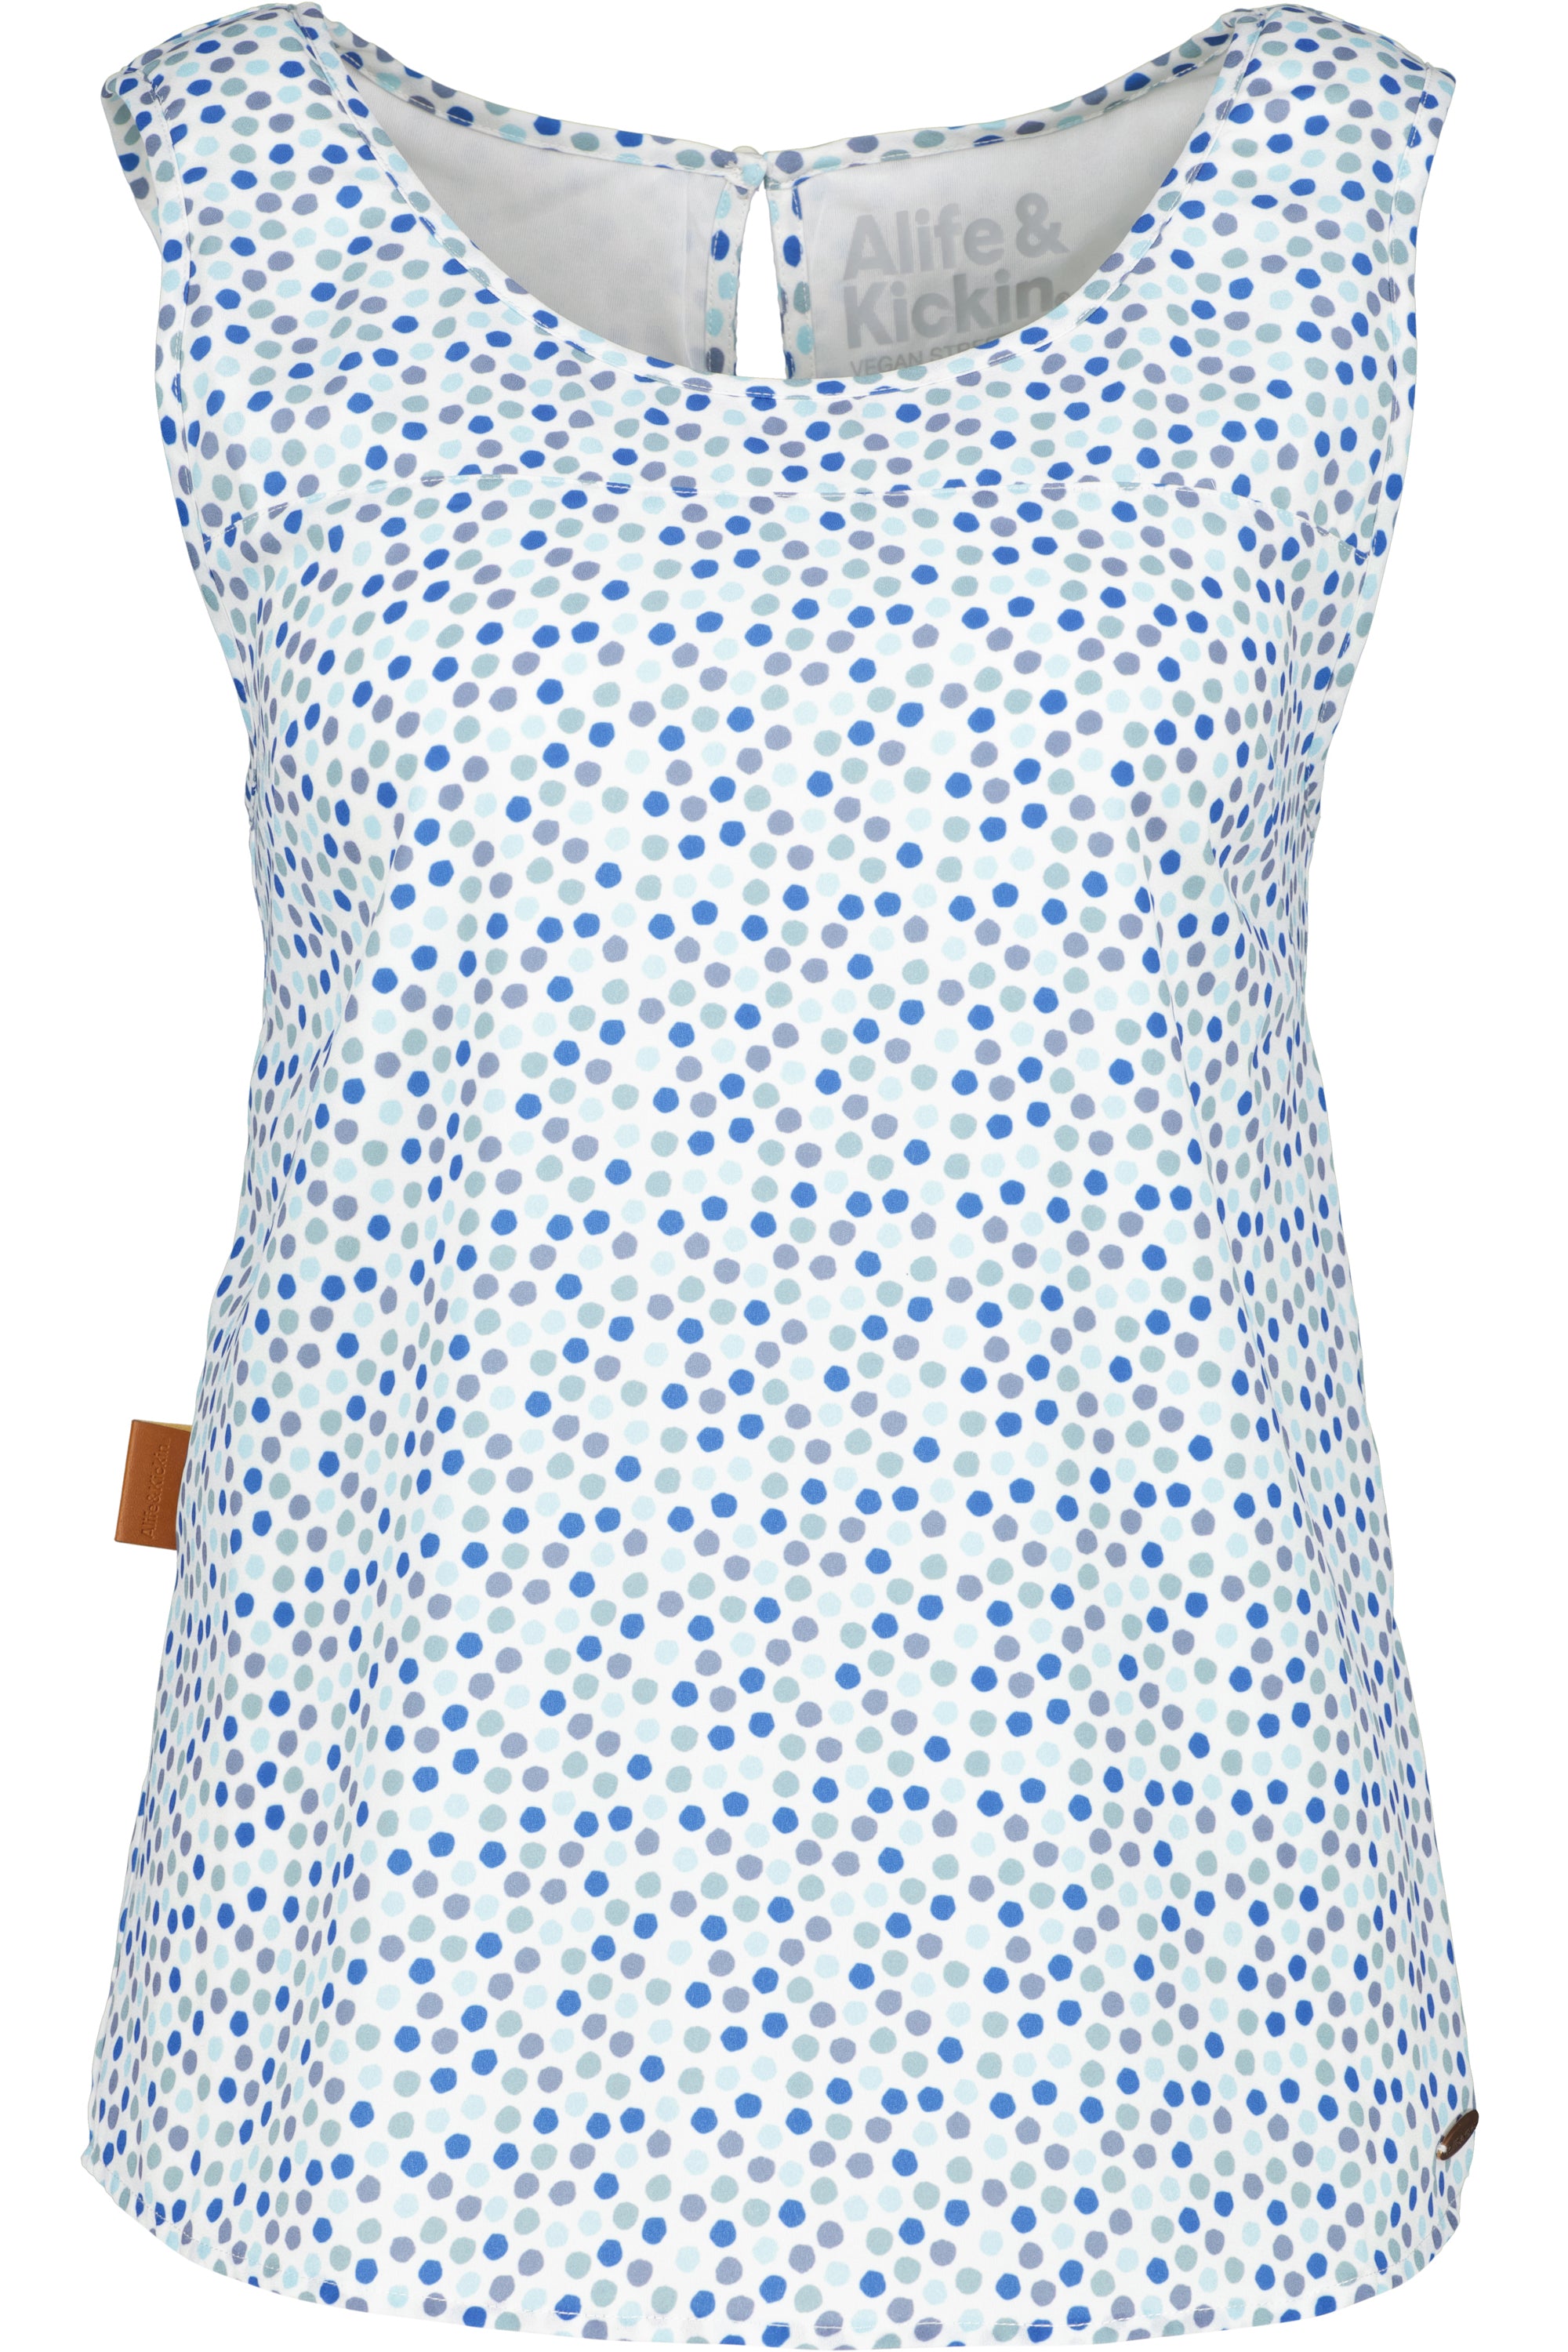 GiuliaAK B Bluse mit Muster - Leichter Sommer-Look für Damen Weiß